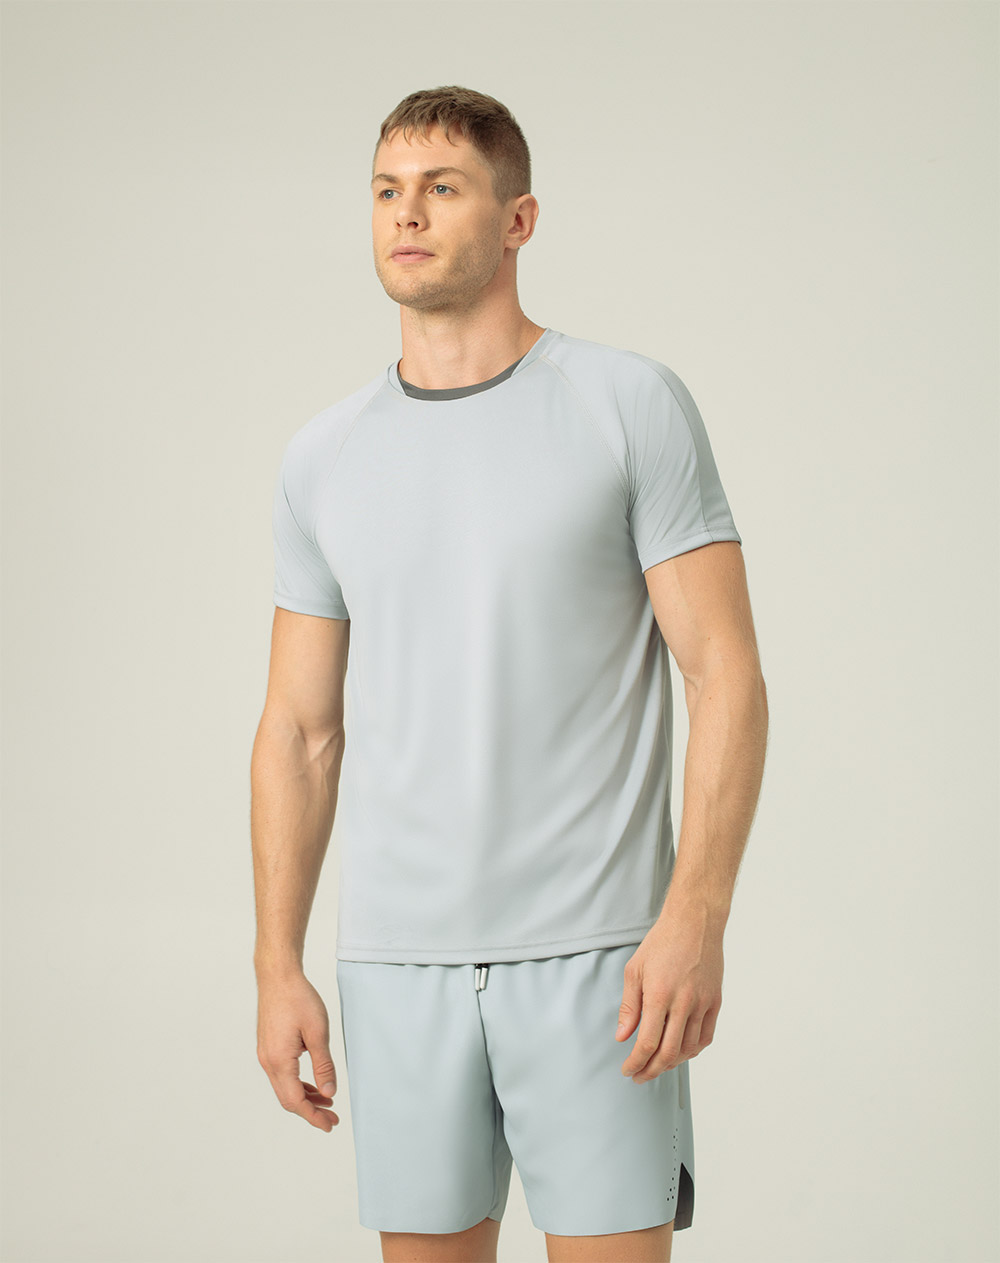 Camiseta hombre sazu gris 42042 r frente punto blanco